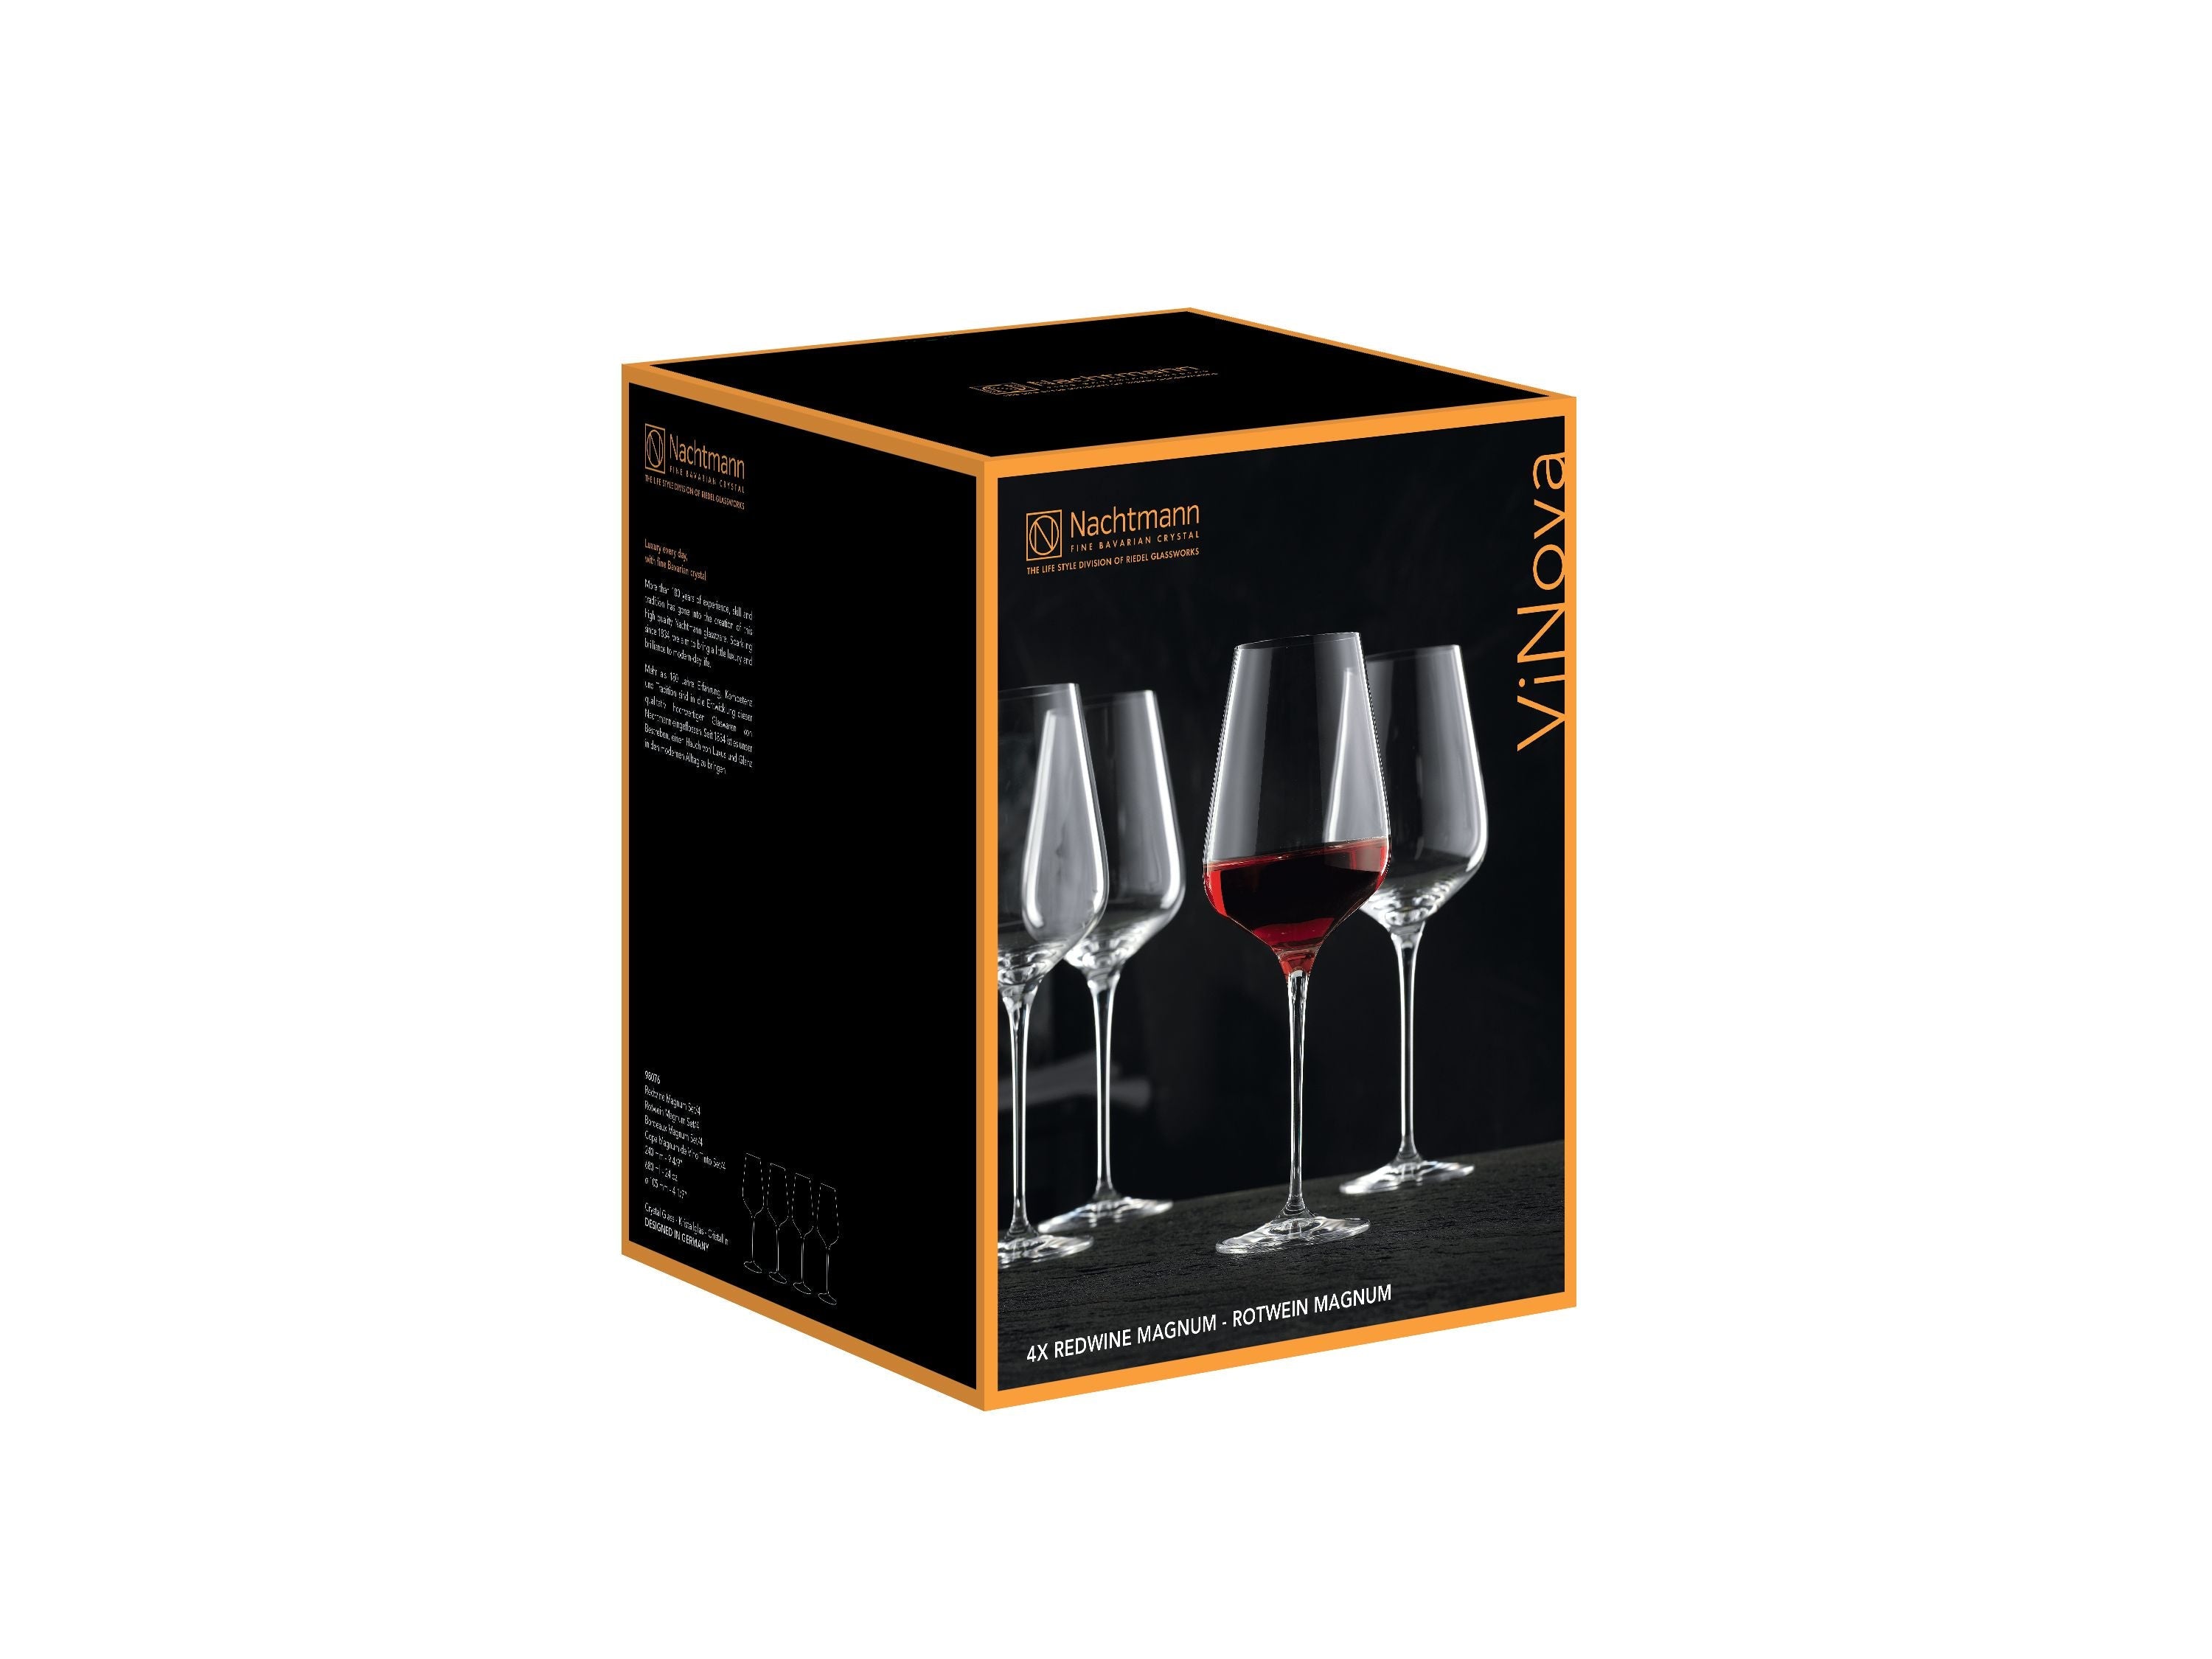 Nachtmann Vi Nova Bordeaux Glas 680 ml, Satz von 4